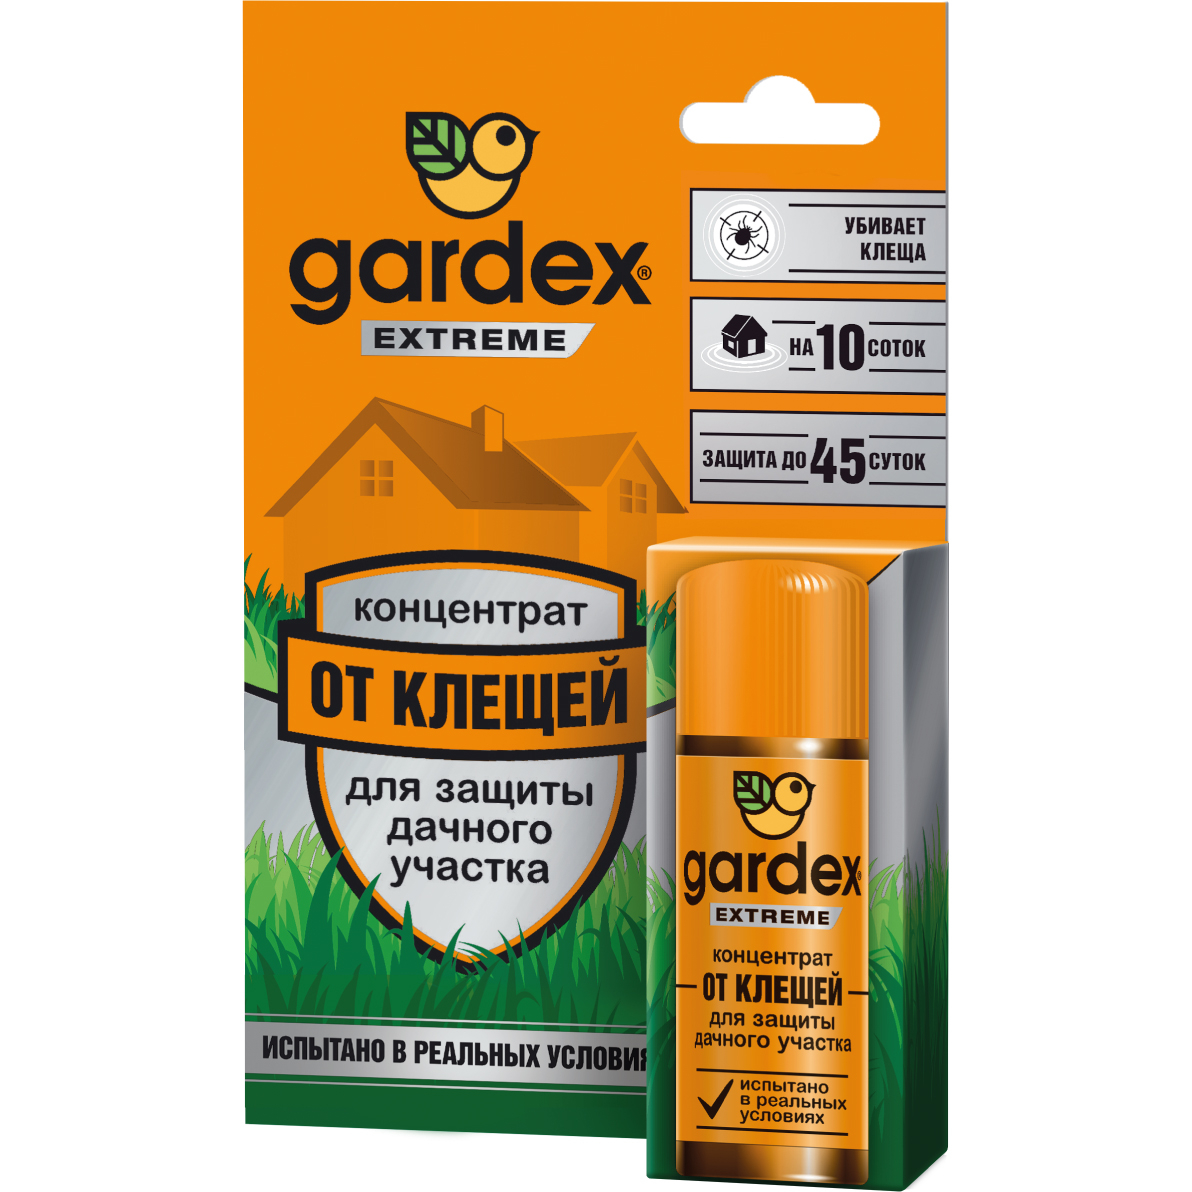 цена Средство Gardex Extreme концентрат для защиты дачного участка от клещей